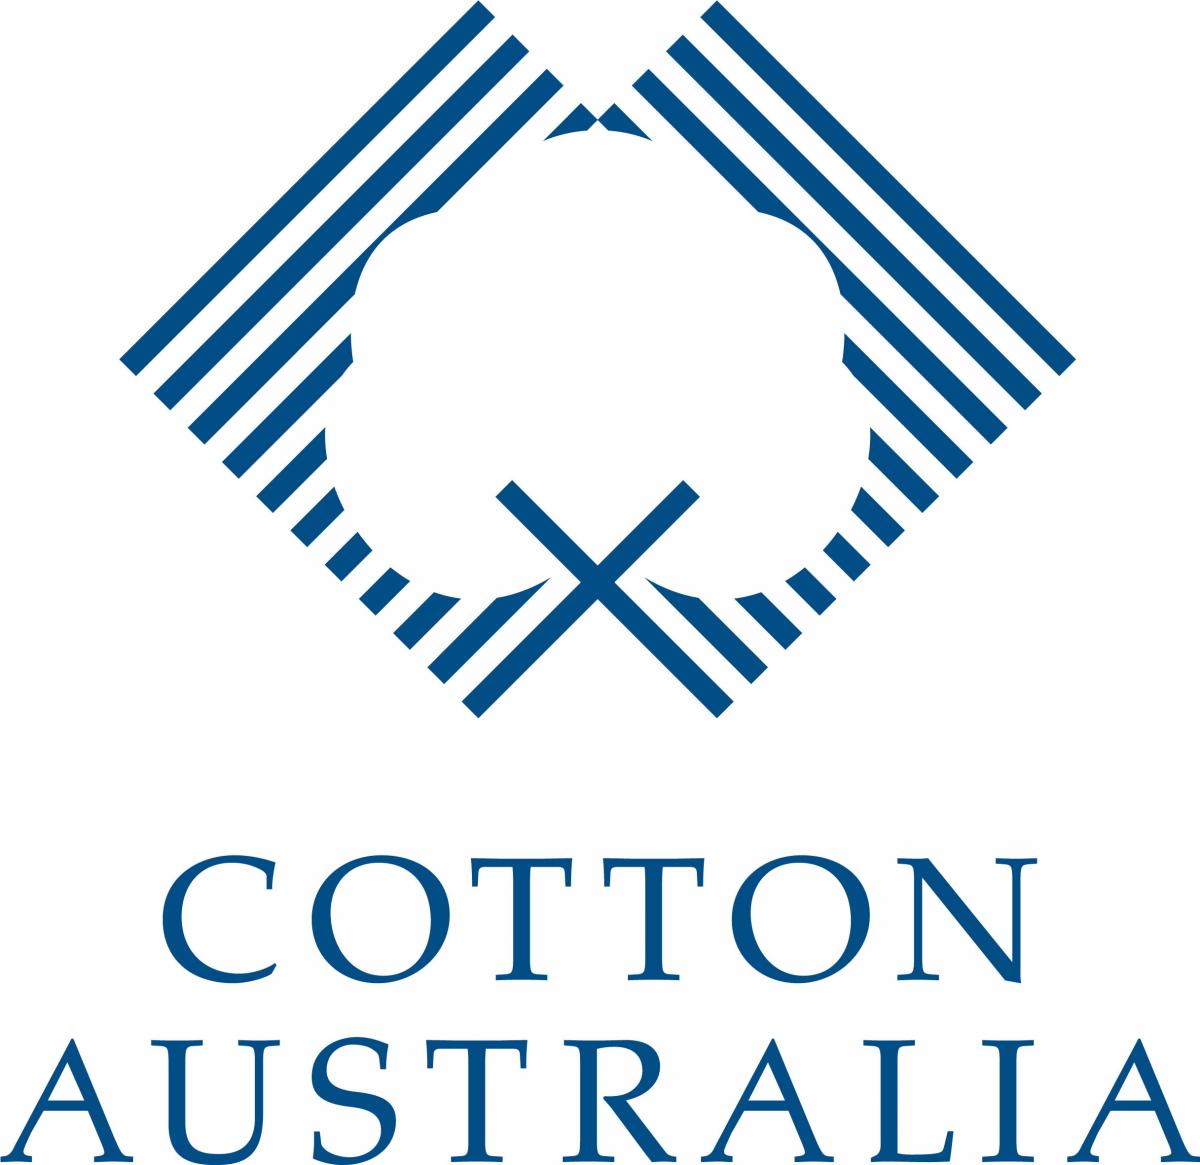 Cotton Australia logo